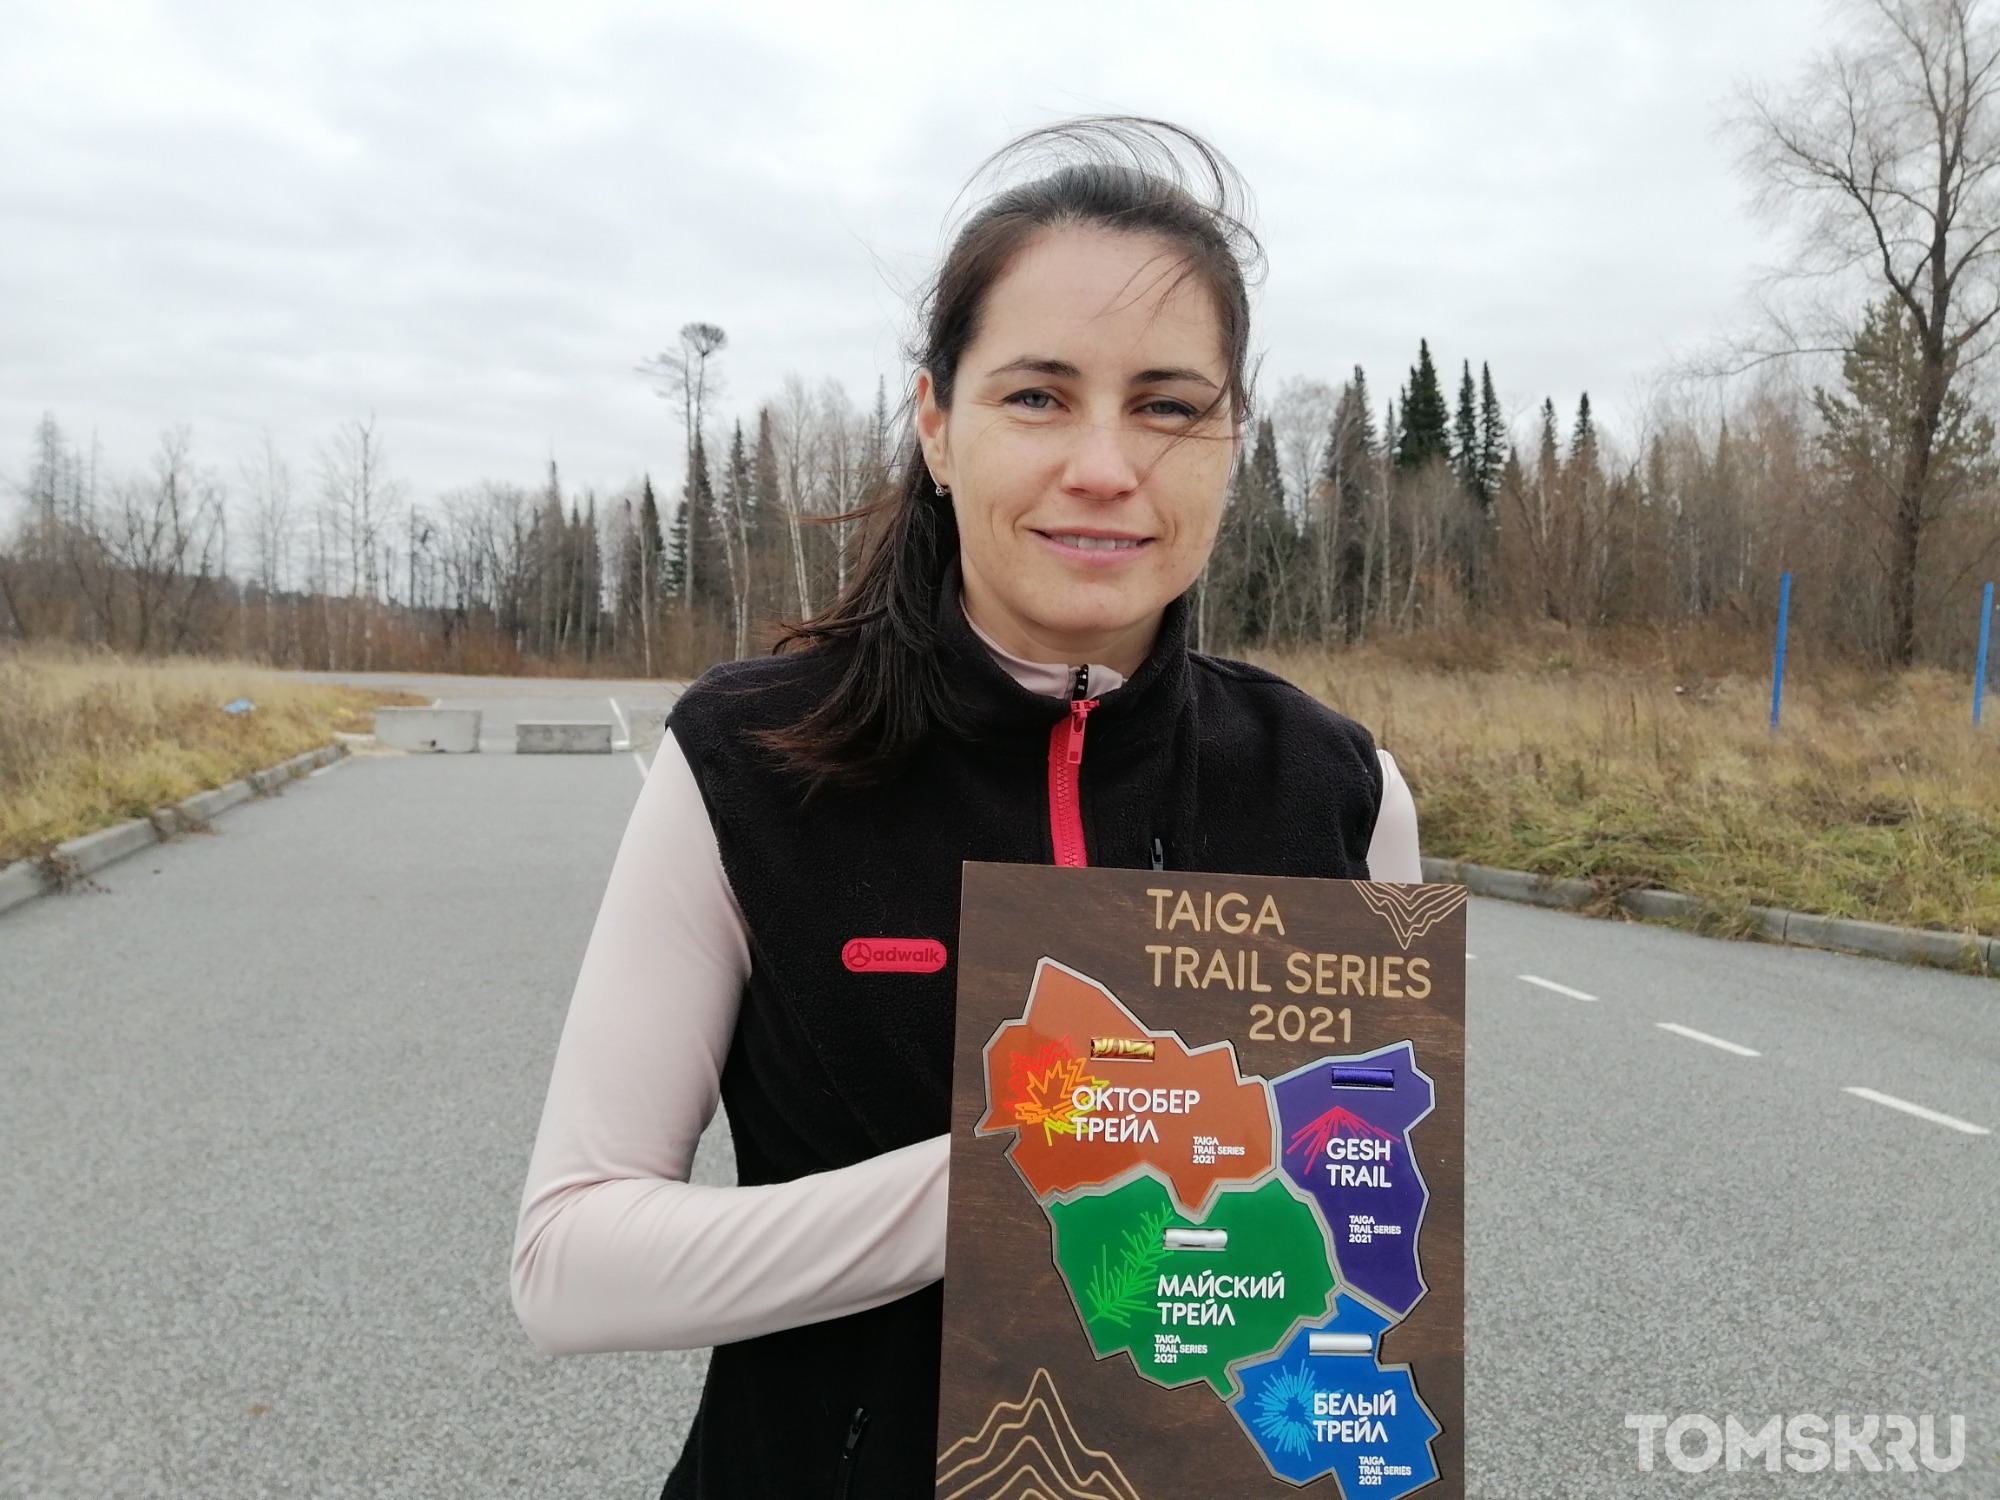 Я мать и должна вернуться: победительница марафона по суточному бегу из Северска рассказала, в чем ищет силы и вдохновение